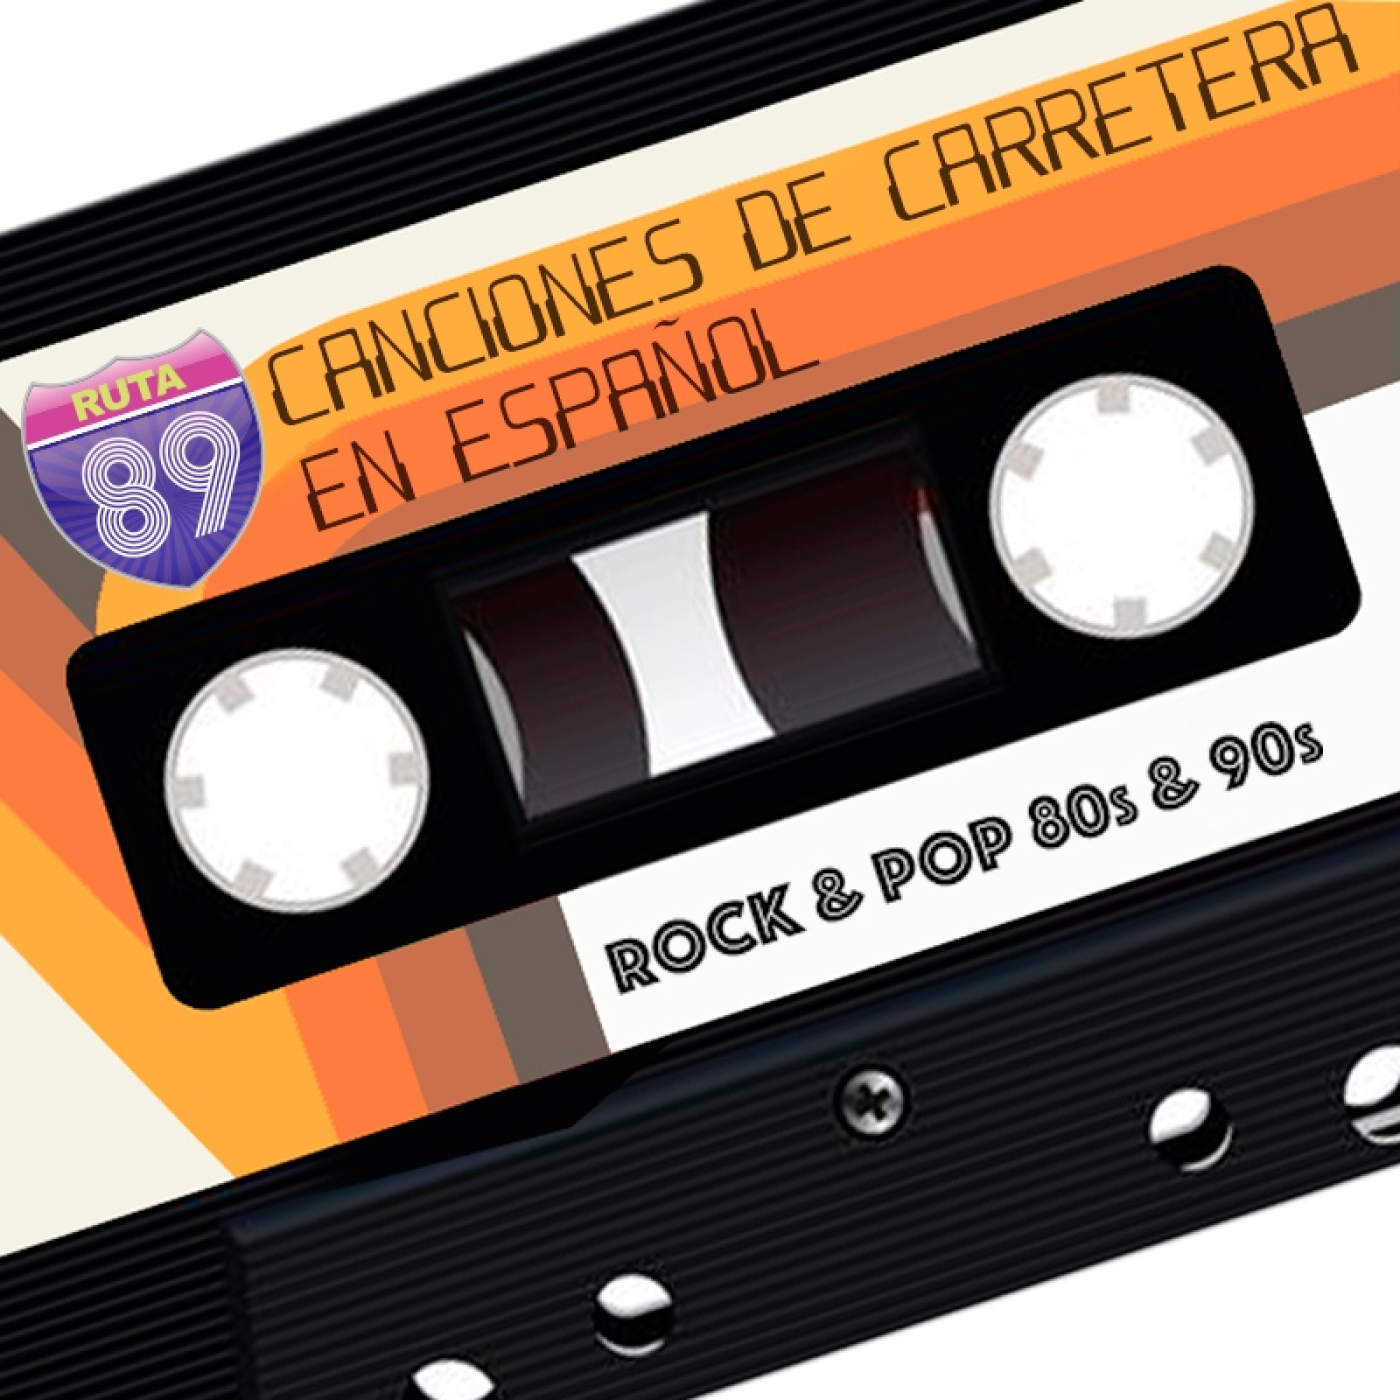 Canciones de Carretera en Español Image